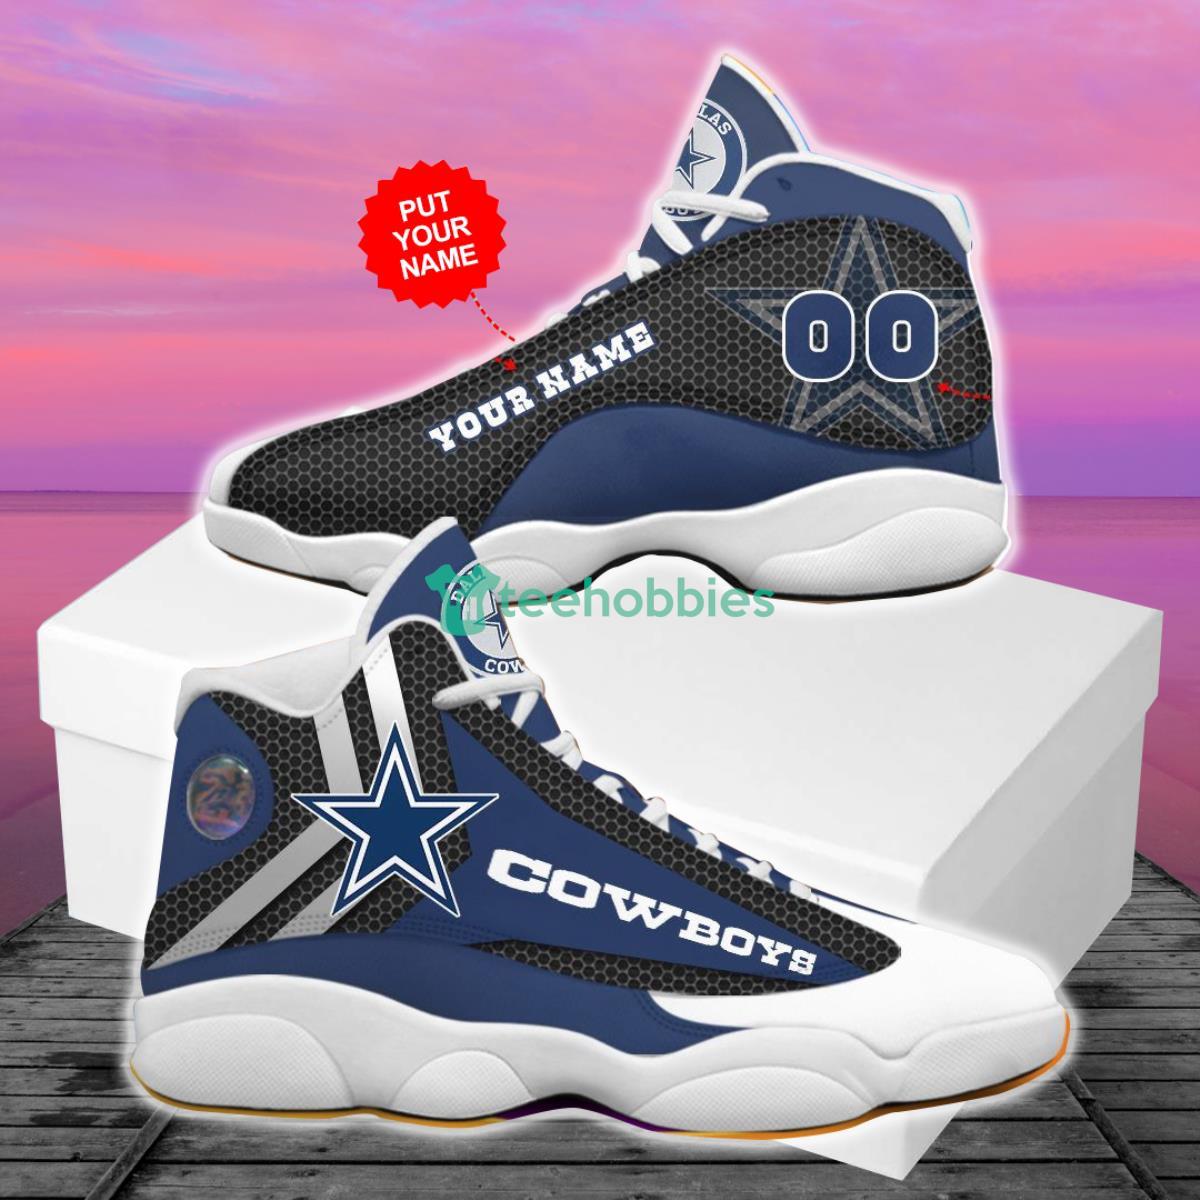 Personalized Dallas Cowboys Air Jordan 13 Custom Name Shoe, Dallas